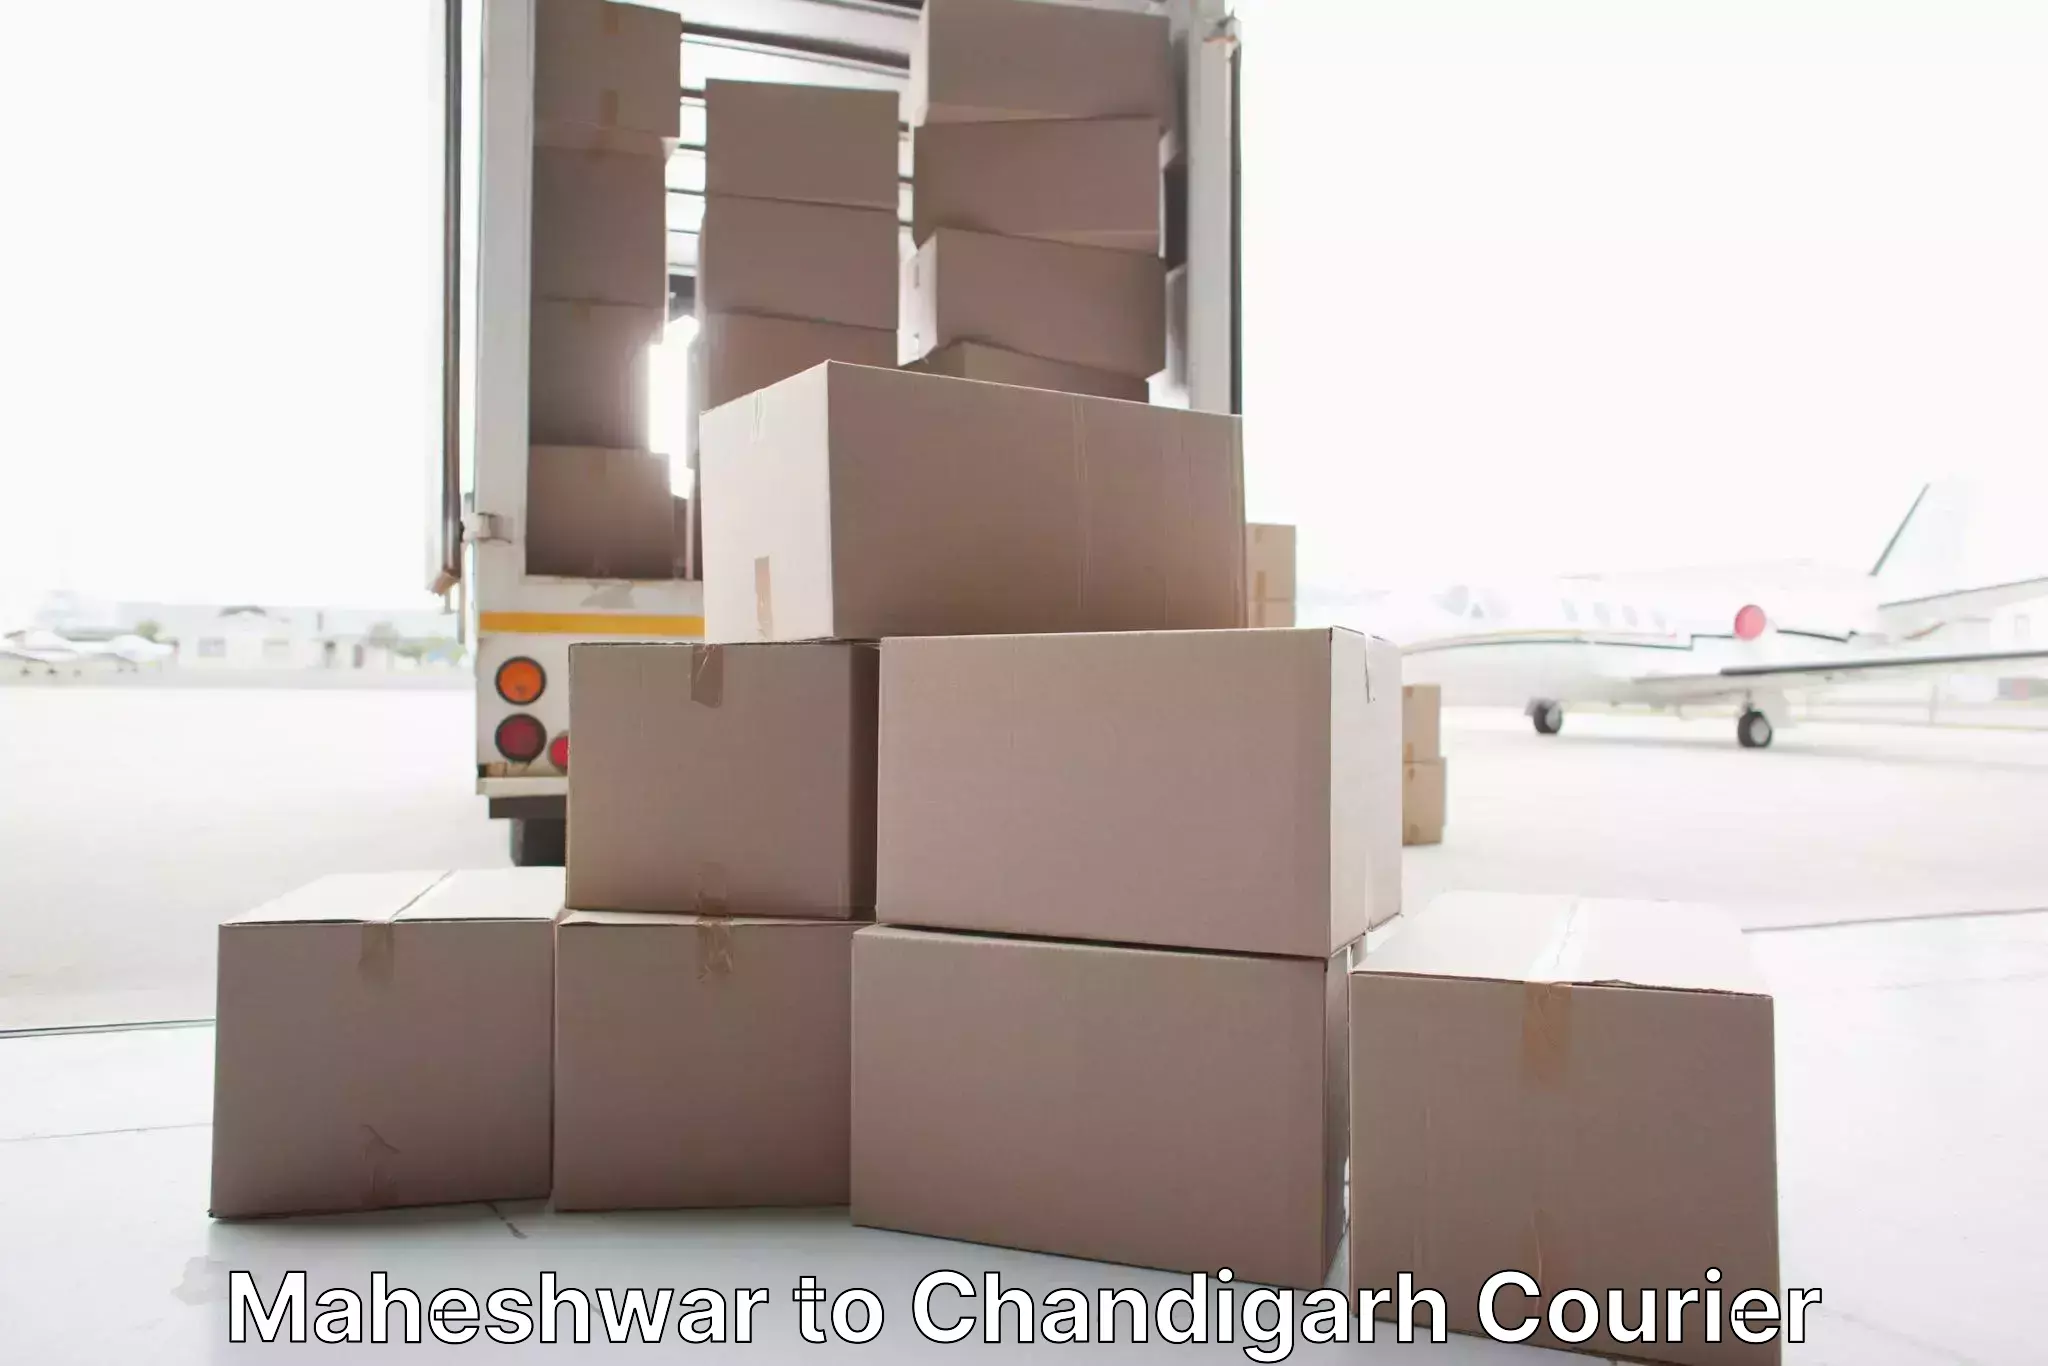 Furniture moving experts Maheshwar to Chandigarh